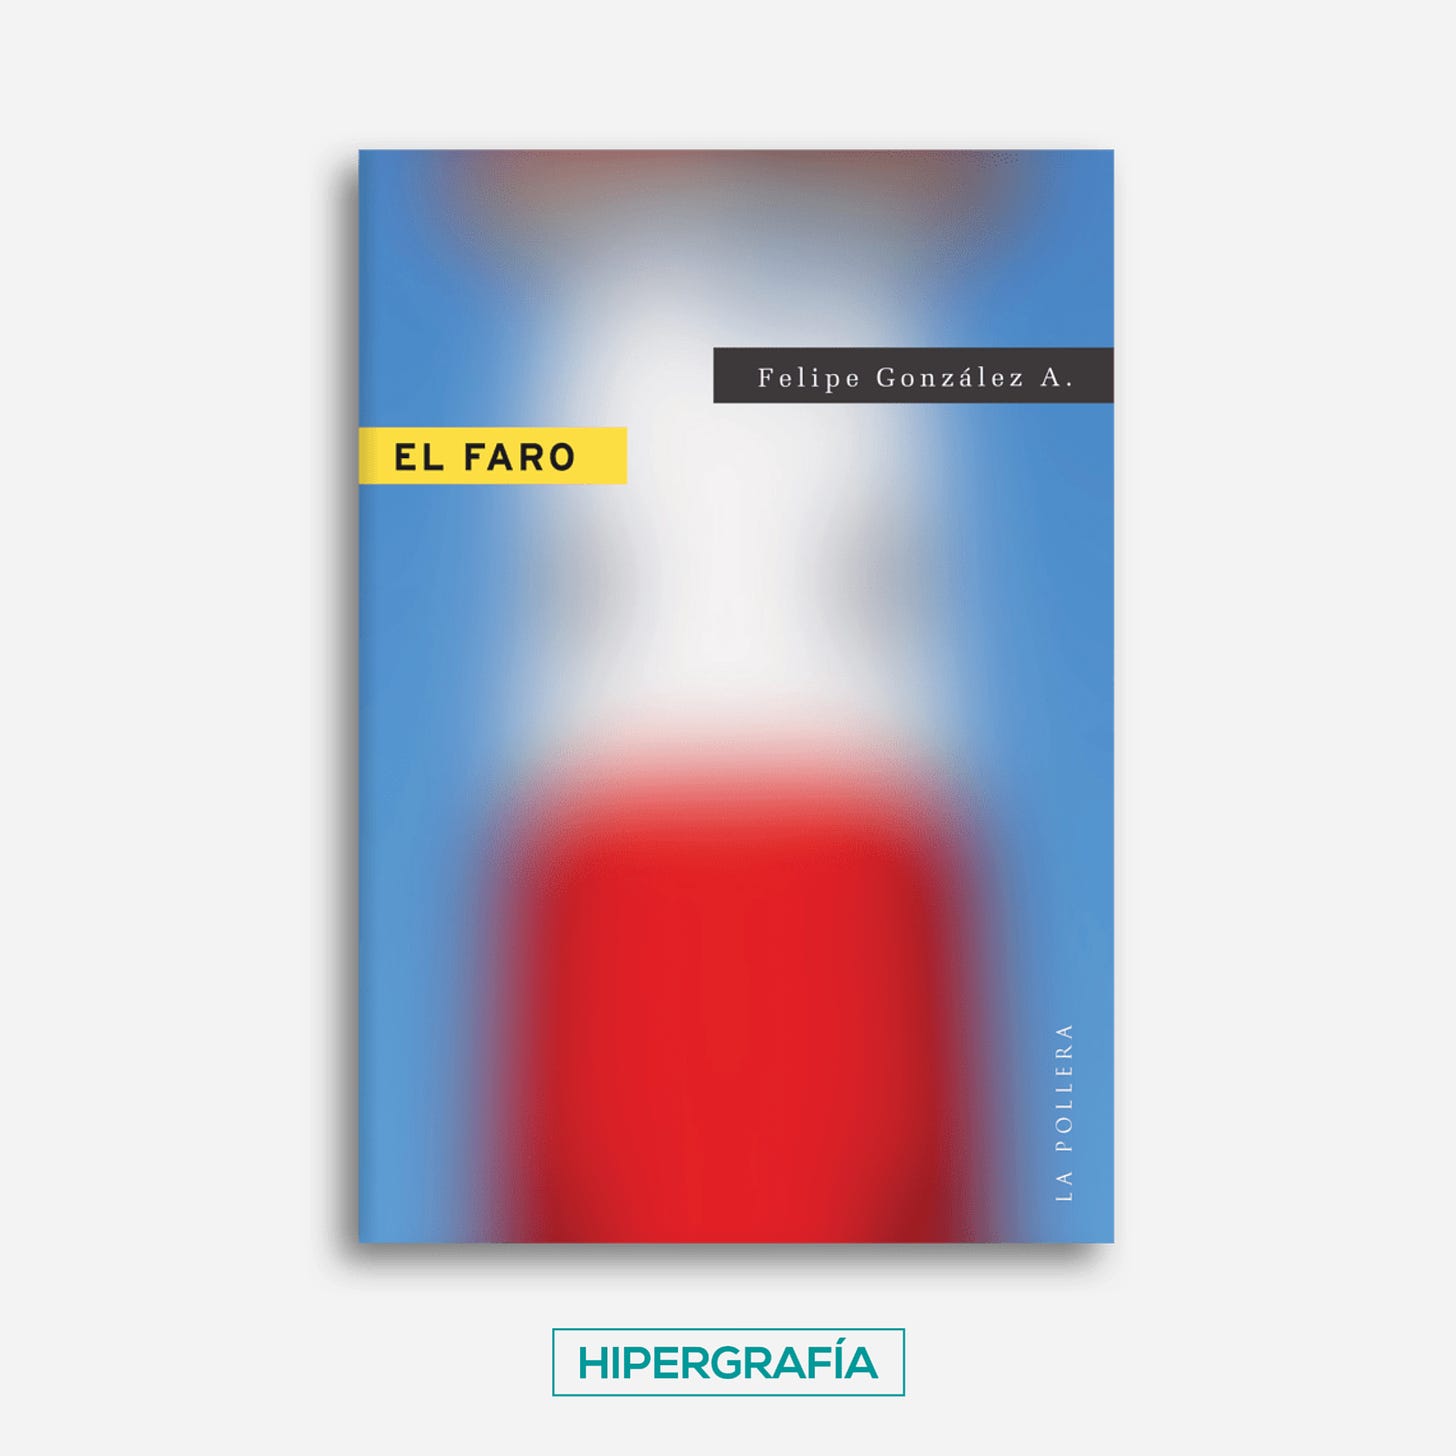 Portada de la novela El faro, de Felipe González, publicada por La Pollera el año 2020.